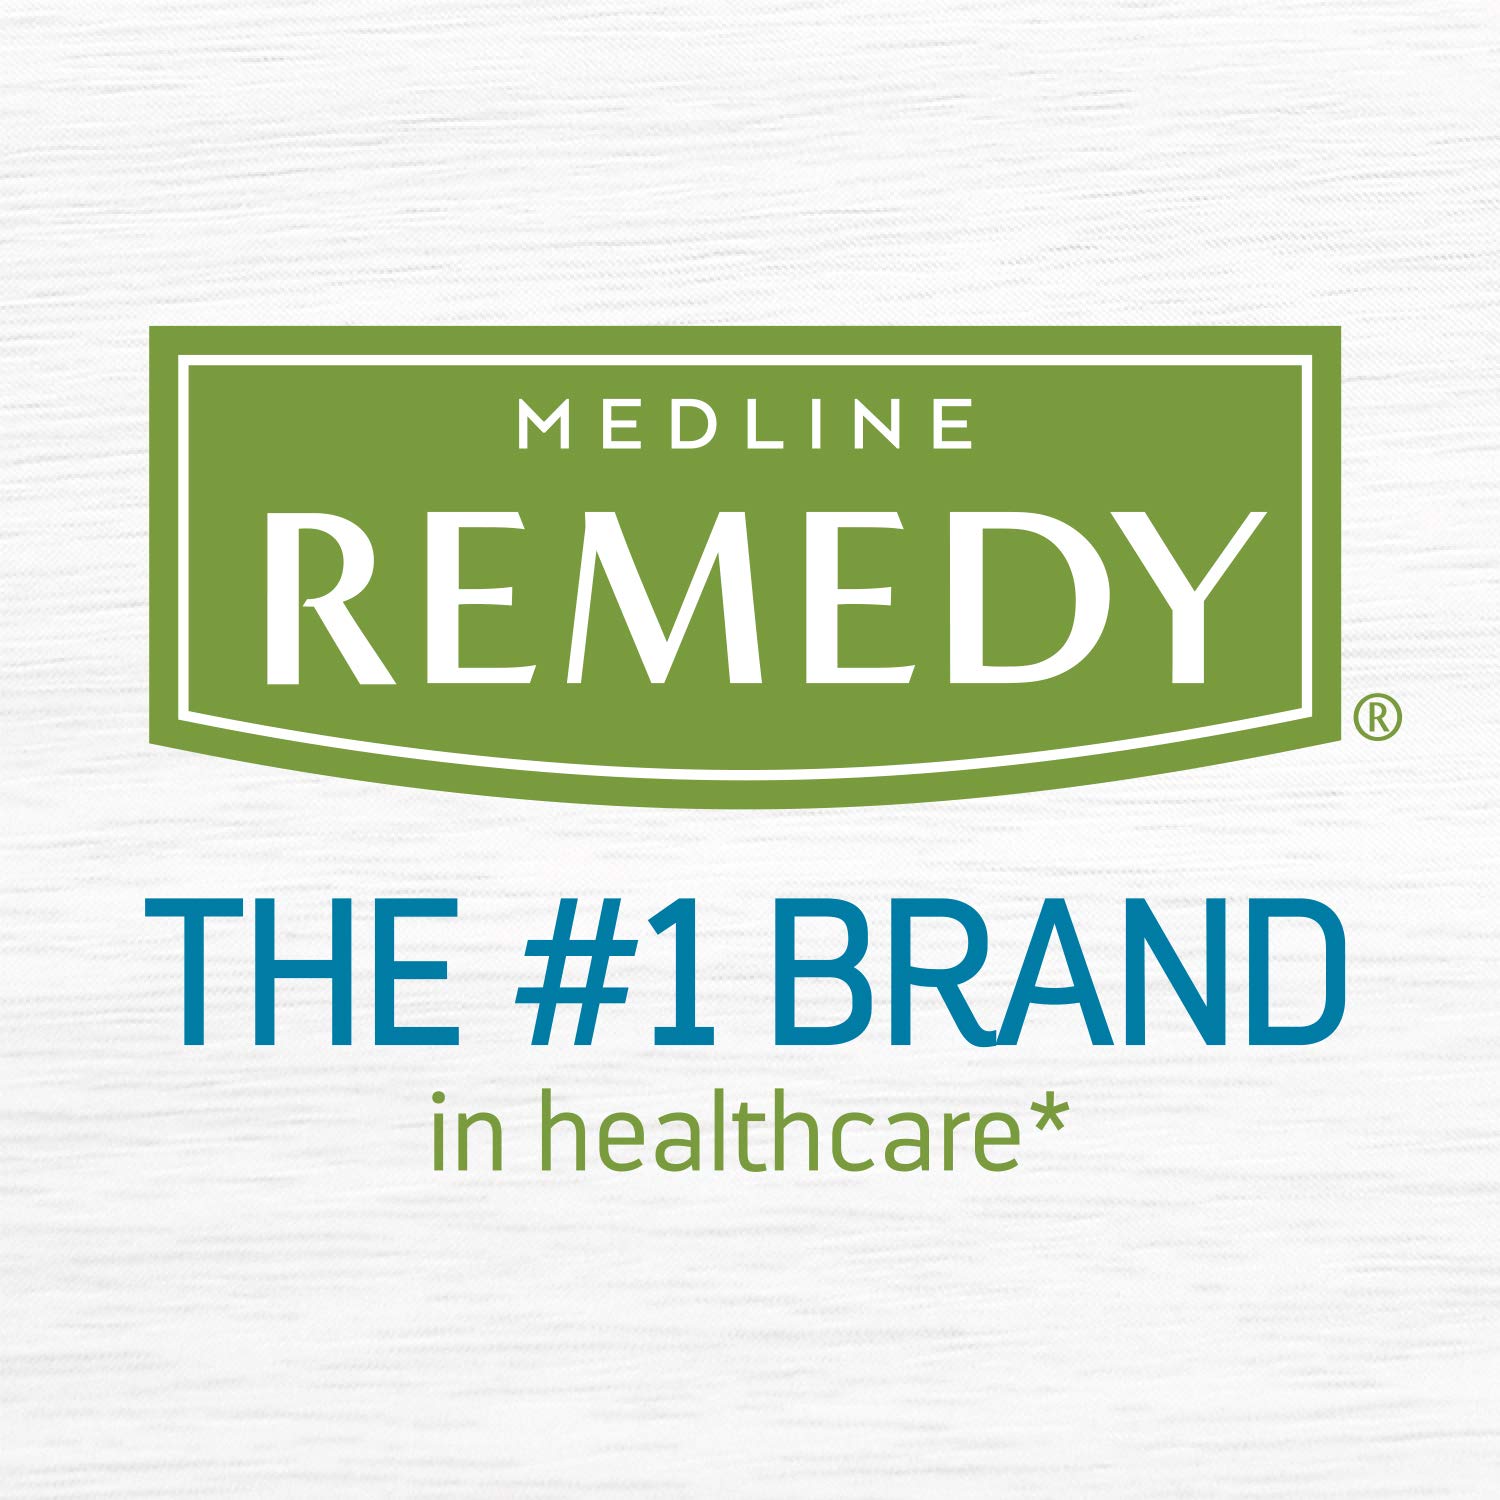 Medline Remedy Phytoplex Nourishing Skin Cream, Skin Moisturizer, Paraben Free Body Lotion, 16 Fl Oz, 2 Pack